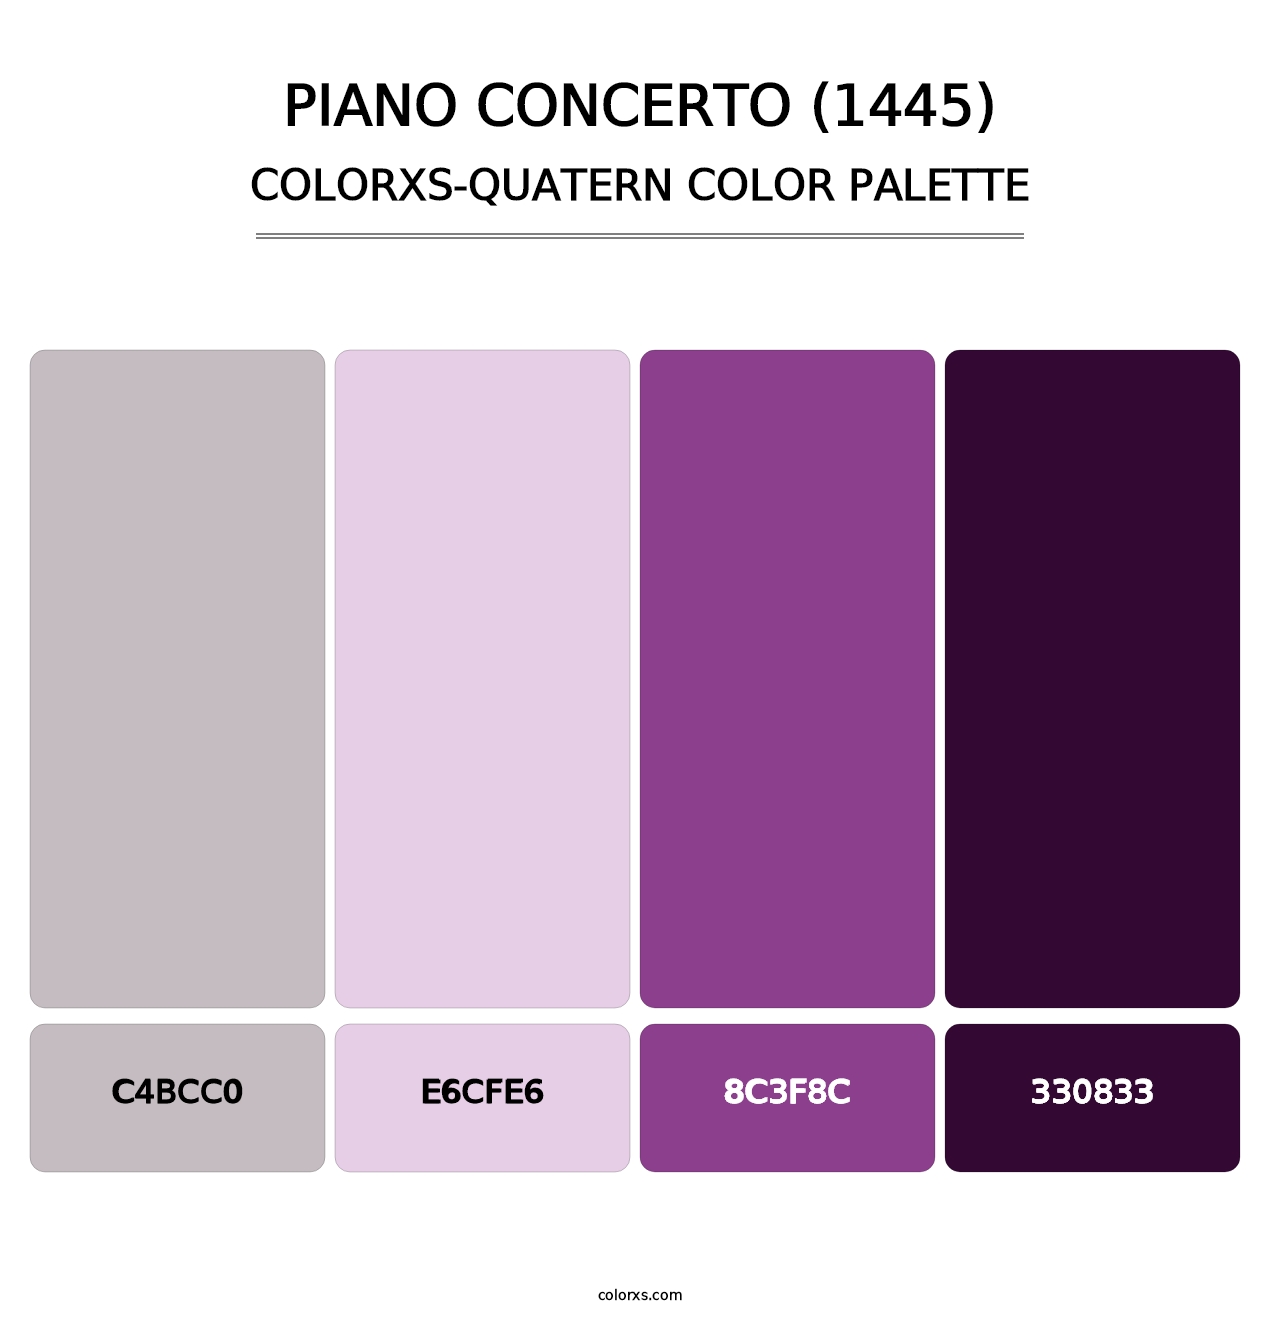 Piano Concerto (1445) - Colorxs Quatern Palette